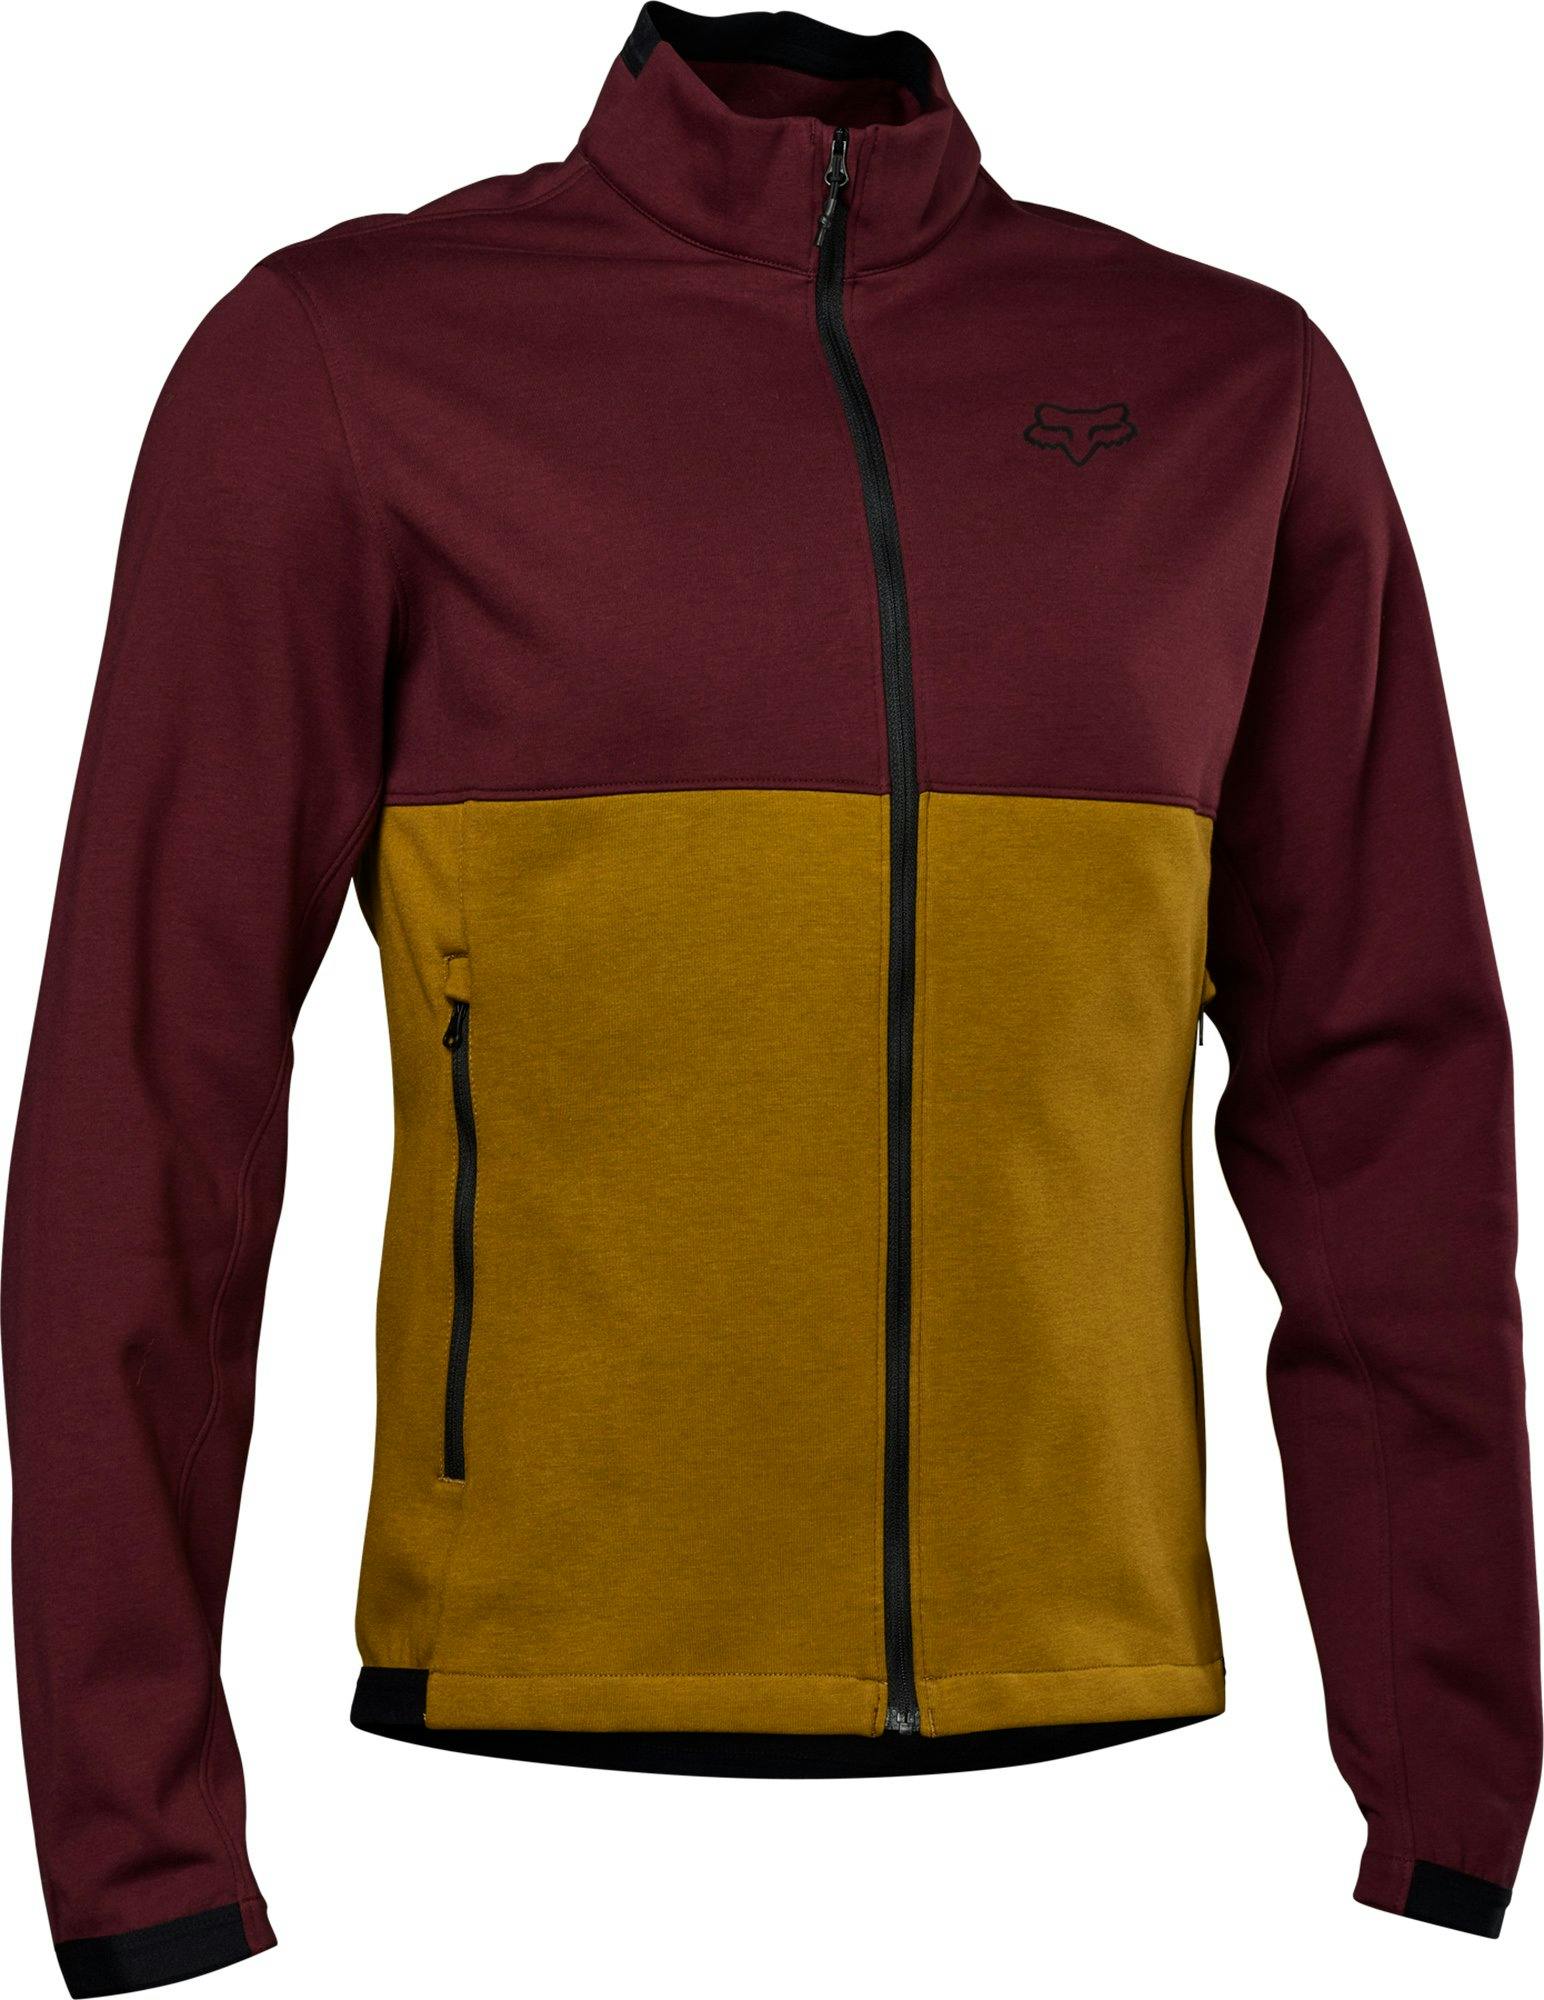 Product gallery image number 1 for product Ranger Fire Fleece Crew Sweatshirt - Men's